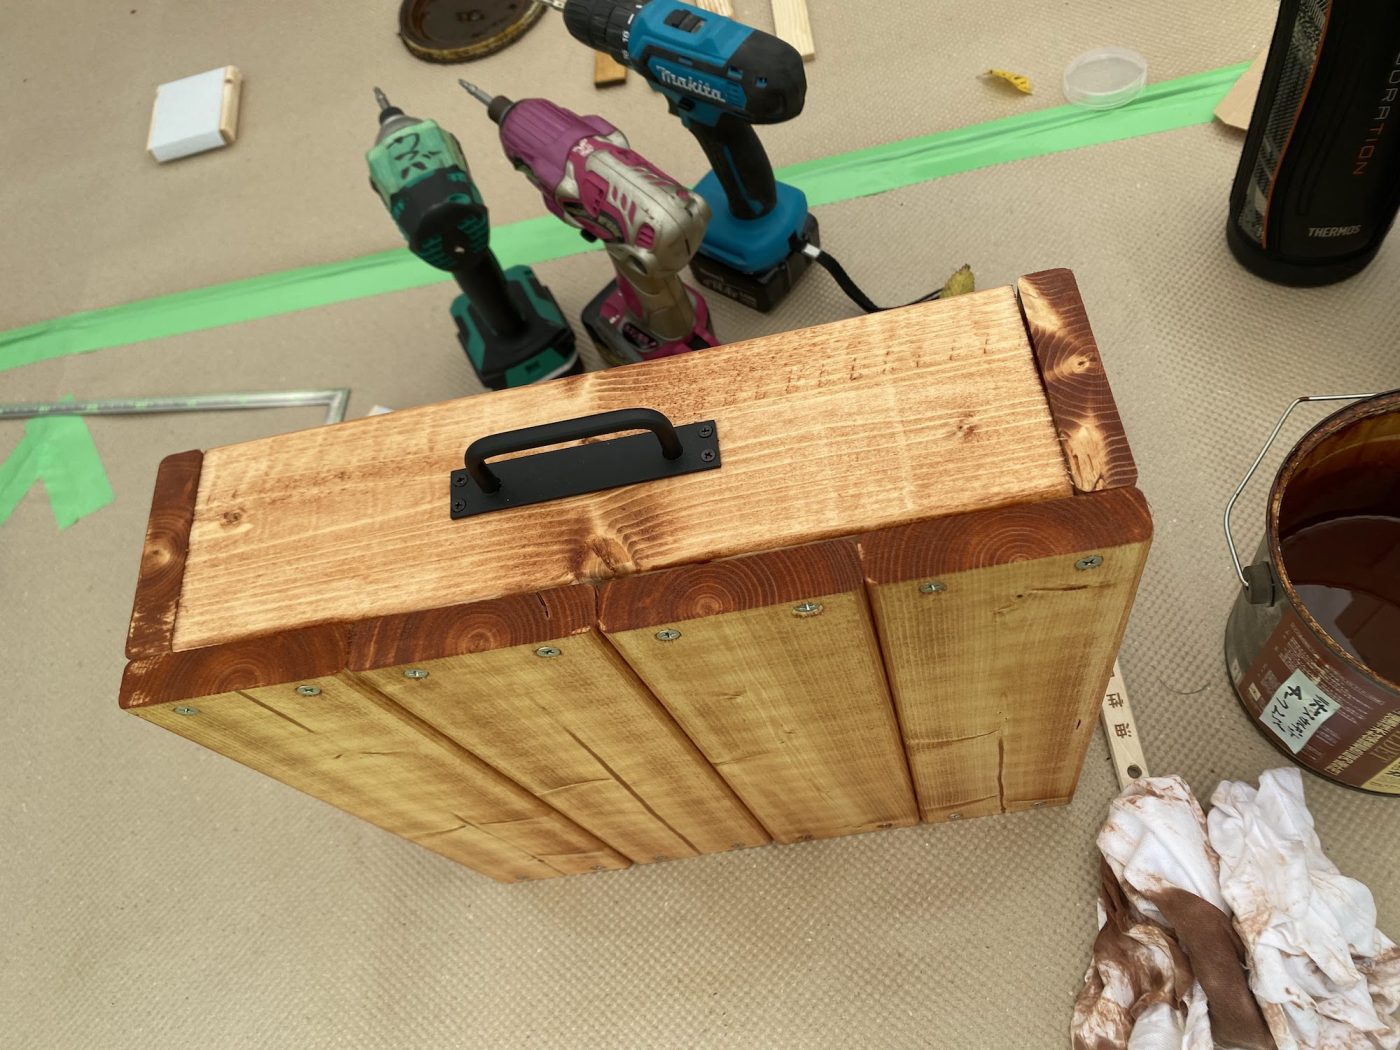 「アイアン把手台座付き丸棒」を取り付けて完成した木製収納ボックス。